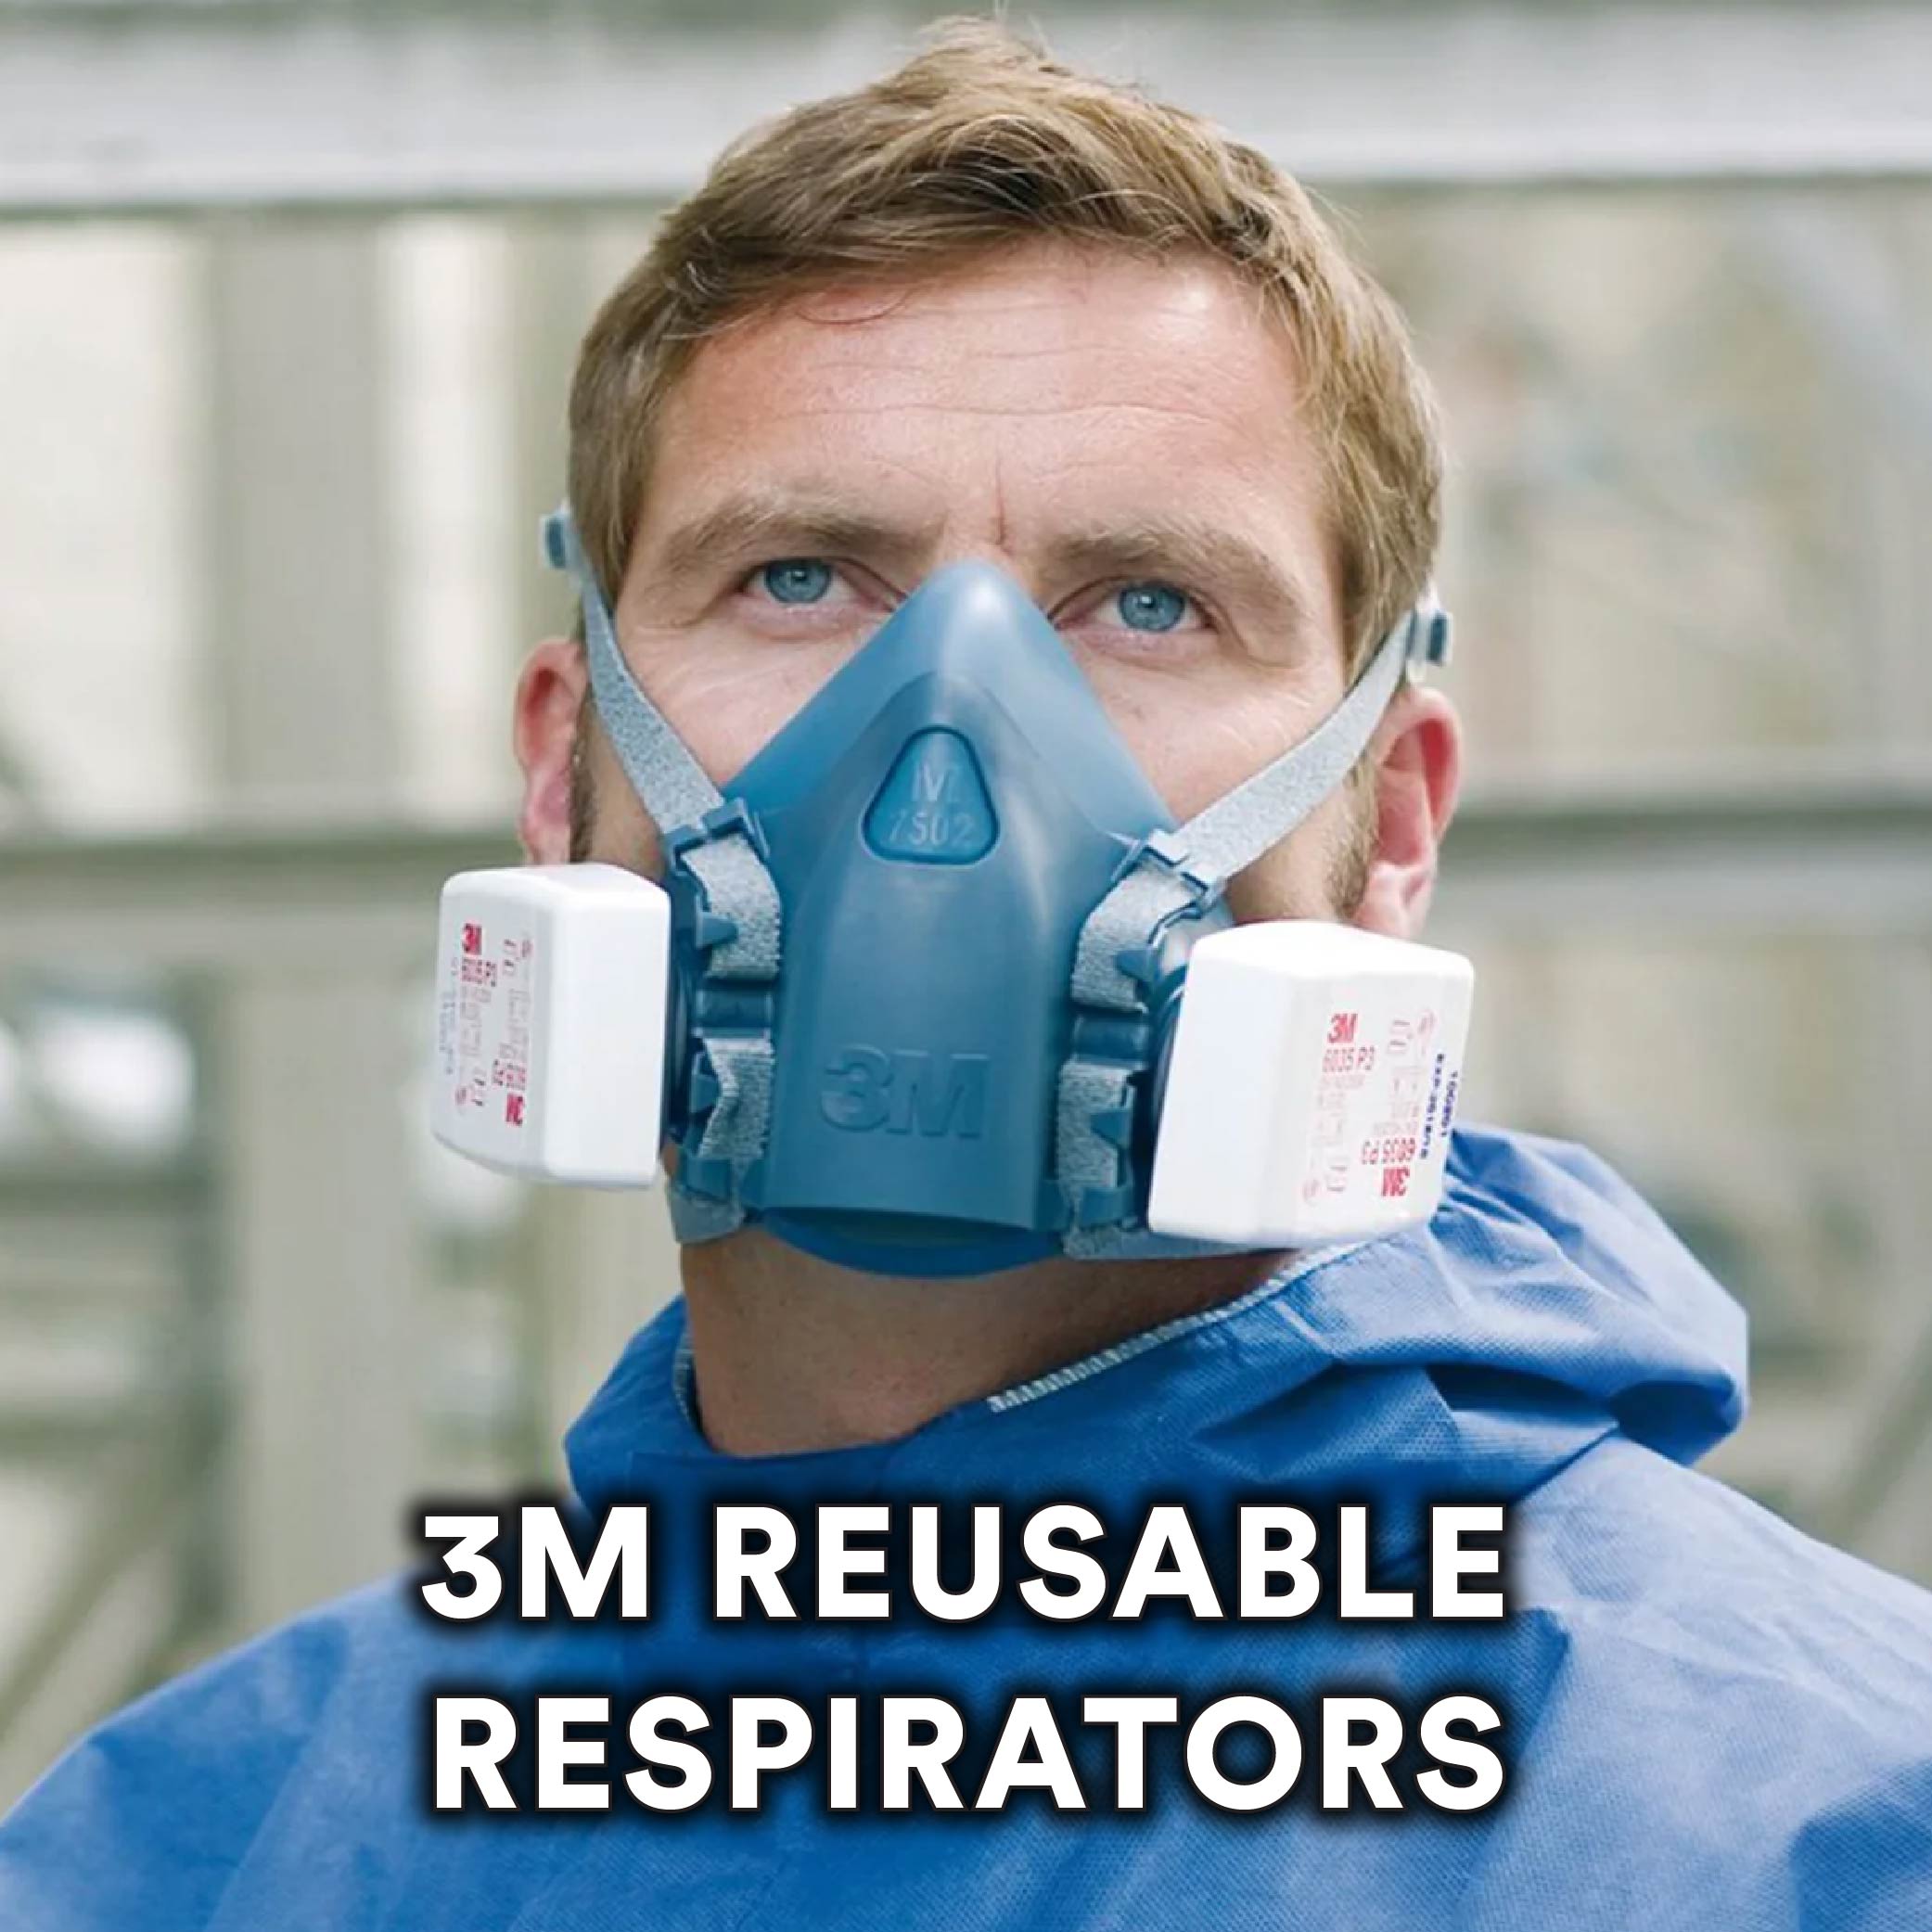 3M Reusable Respirators